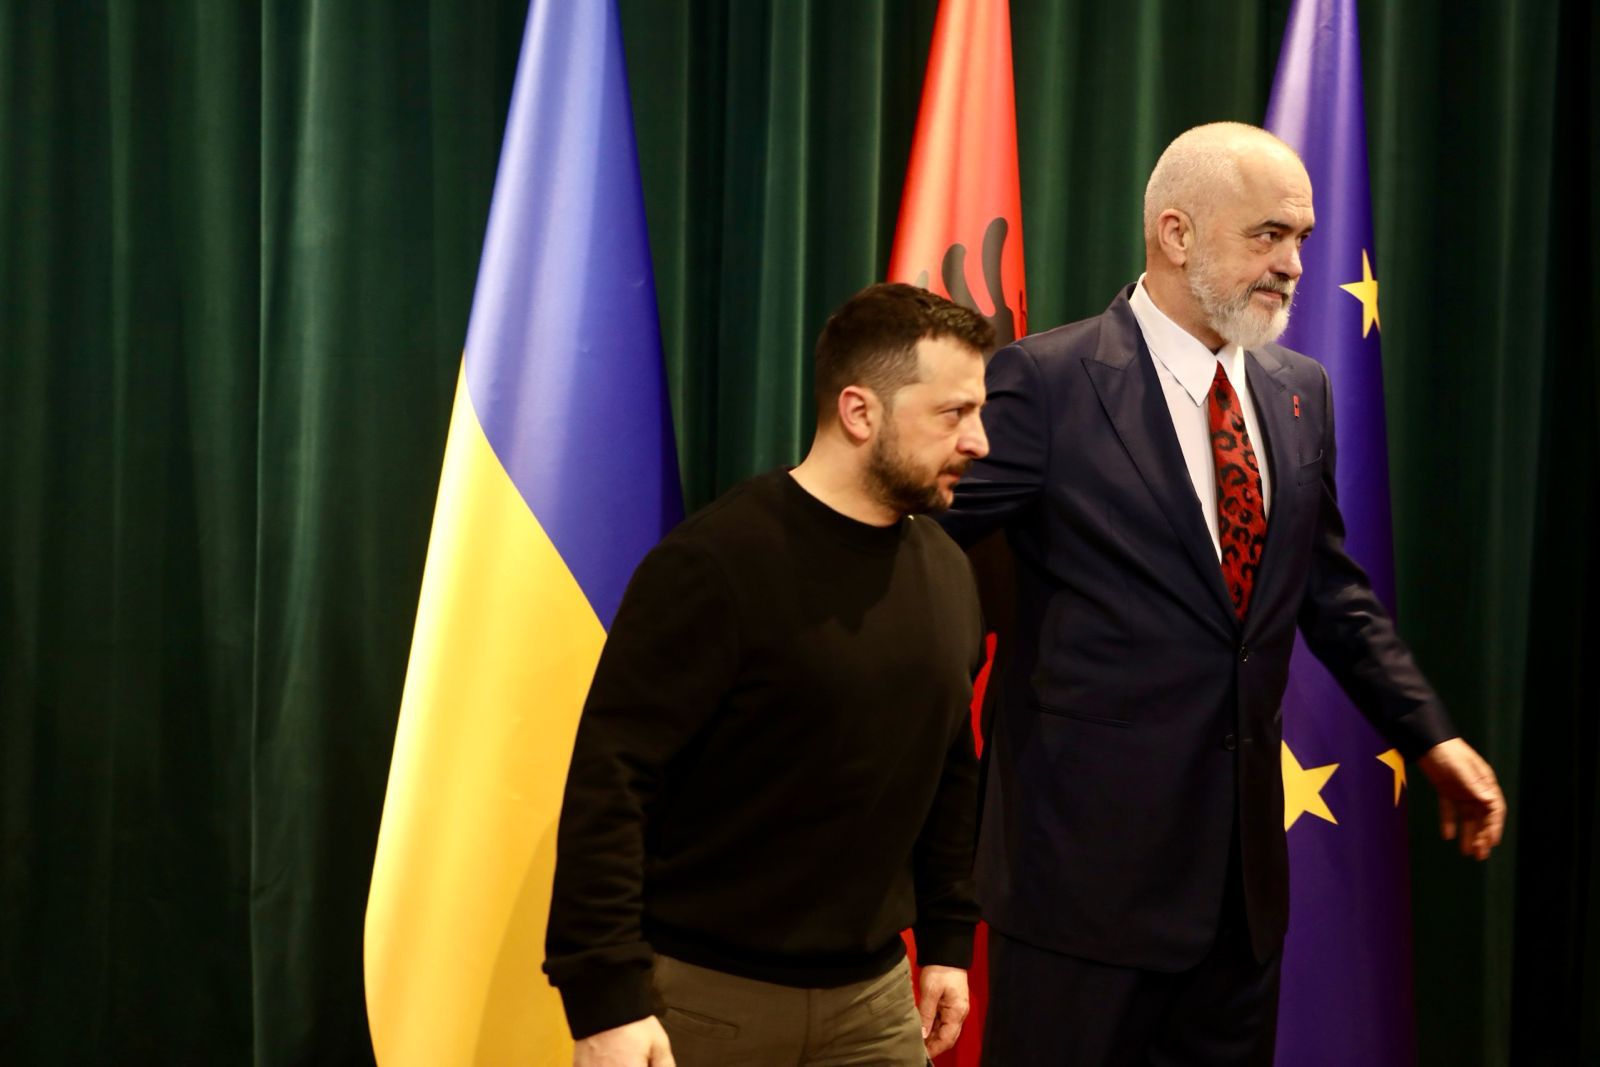 Zelensky: Falendëroj të gjithë shqiptarët për mbështetjen e sinqertë! Të mbështesim njëri-tjetrin në integrimin europian